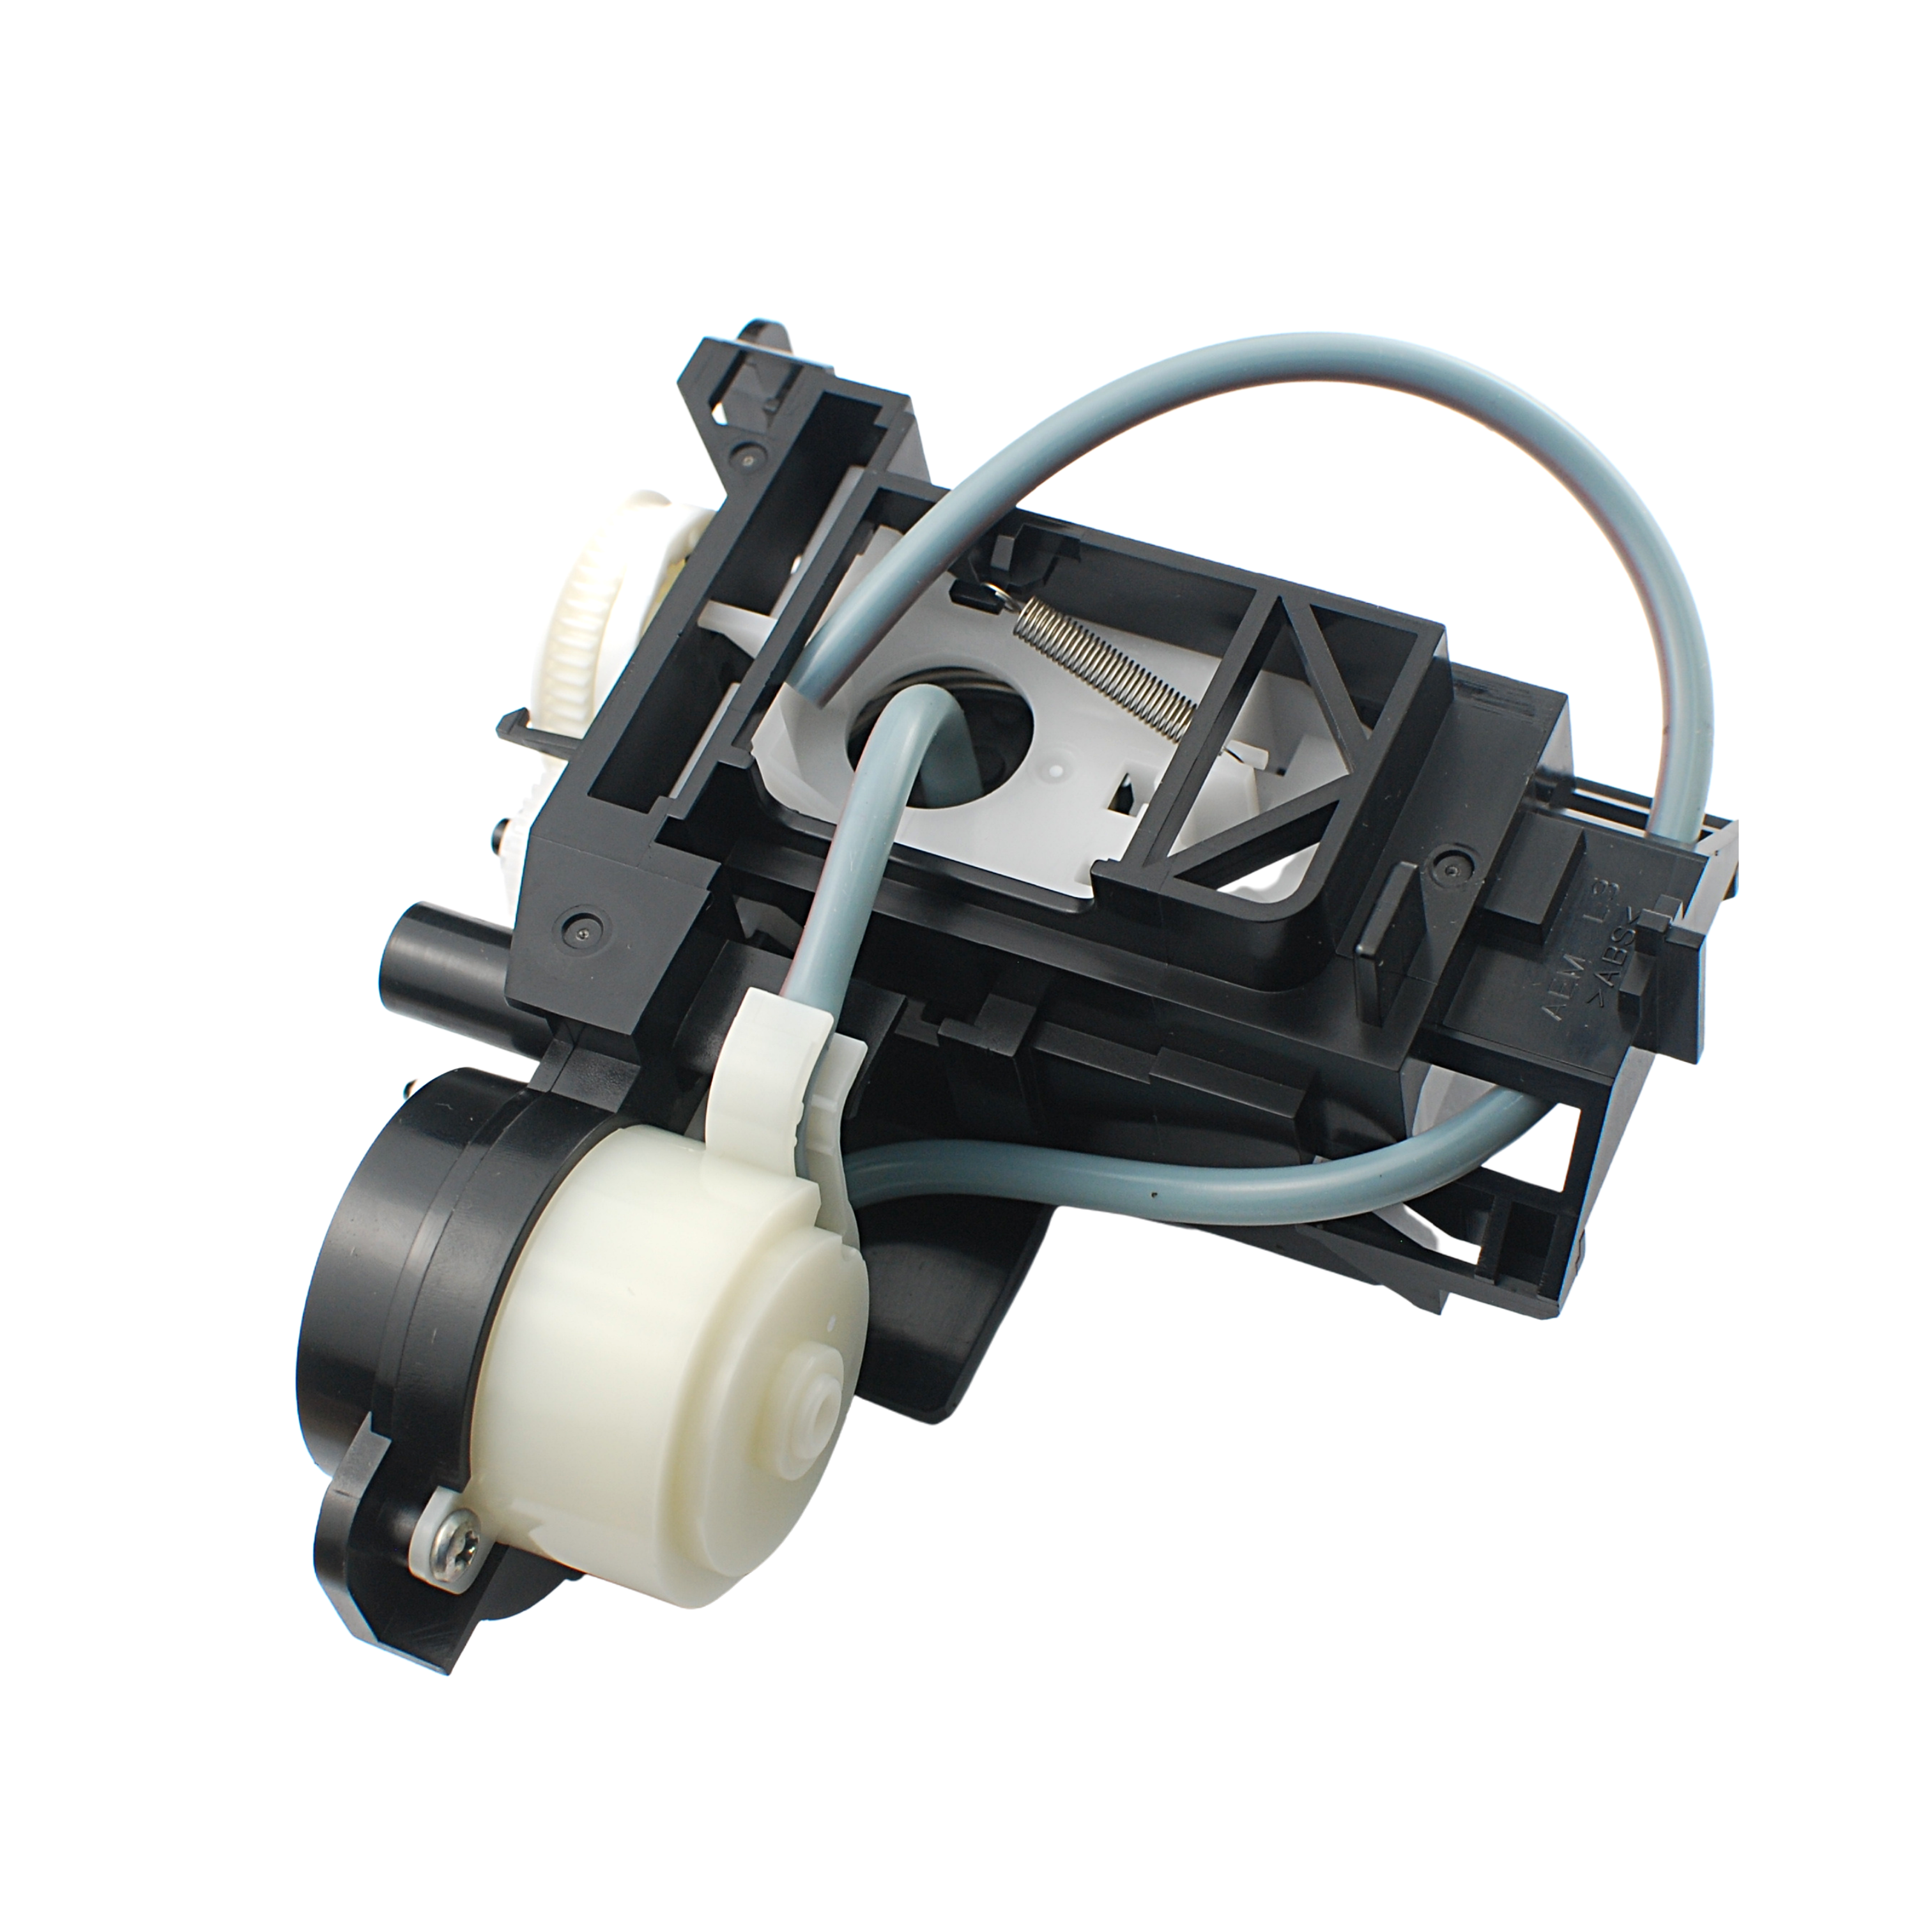 Motor de la bomba de tinta de la impresora Procolored para la impresora UV de tamaño A4